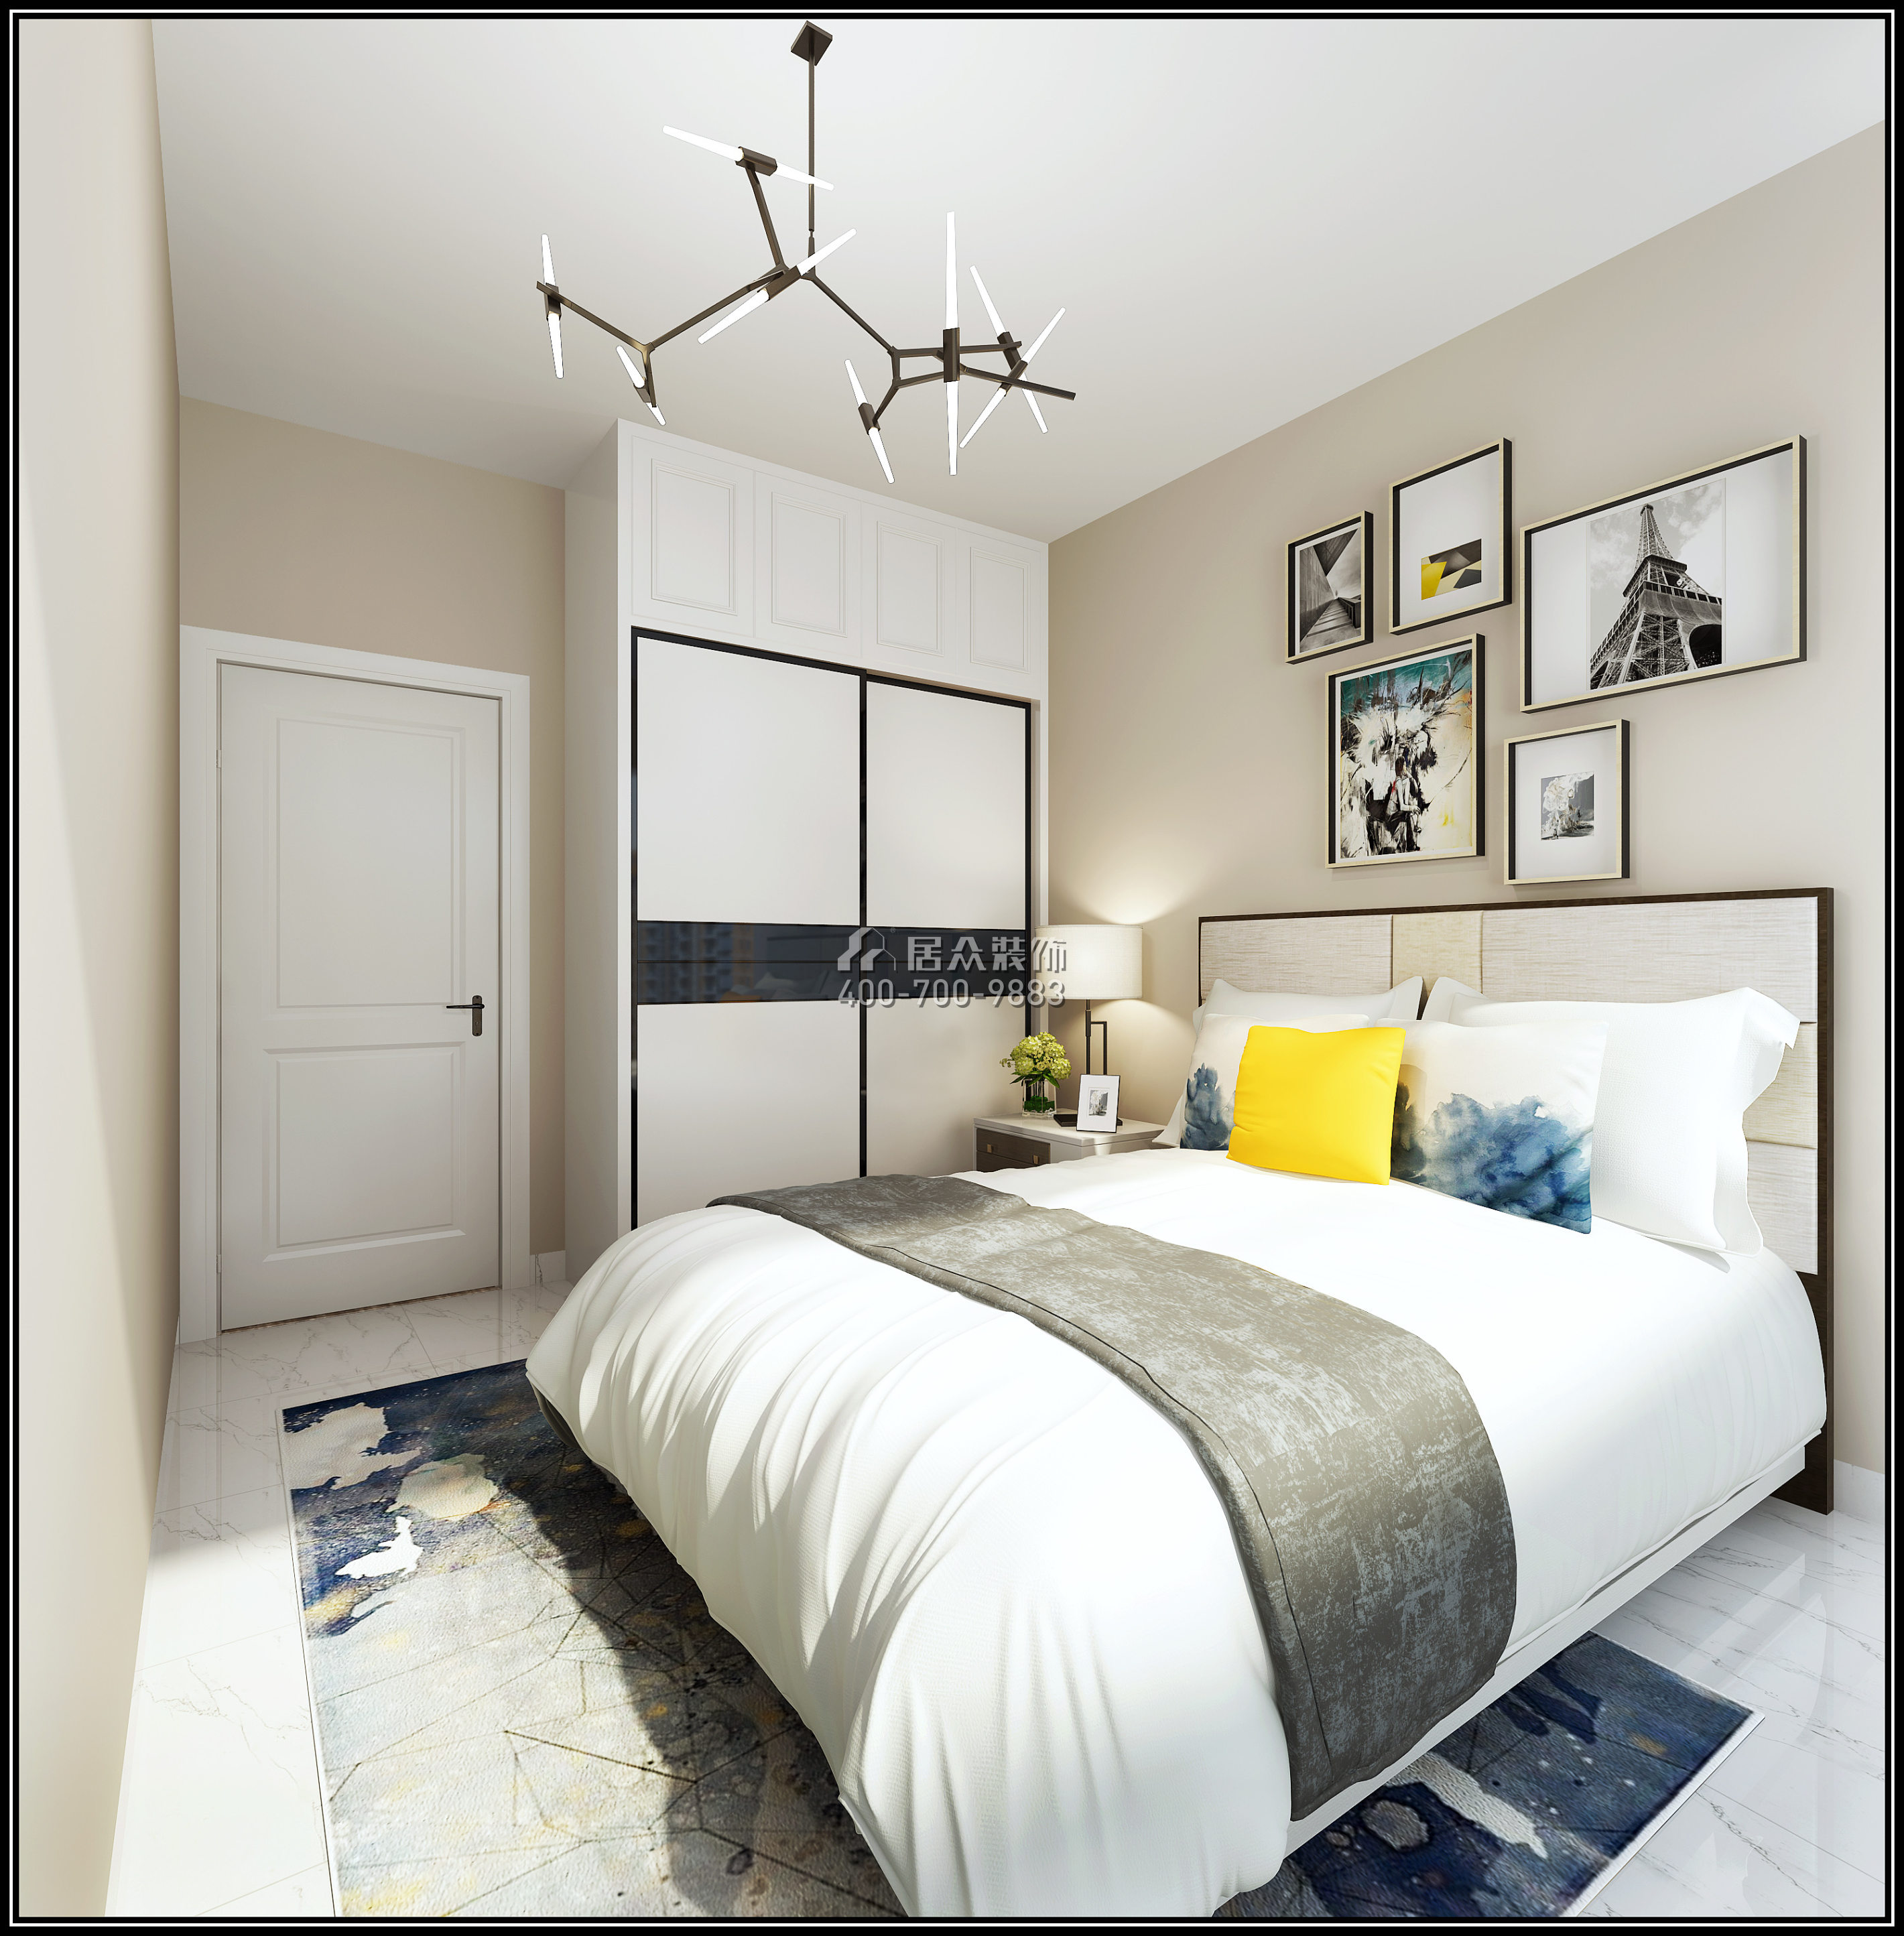 佳华领汇广场77平方米北欧风格平层户型卧室装修效果图